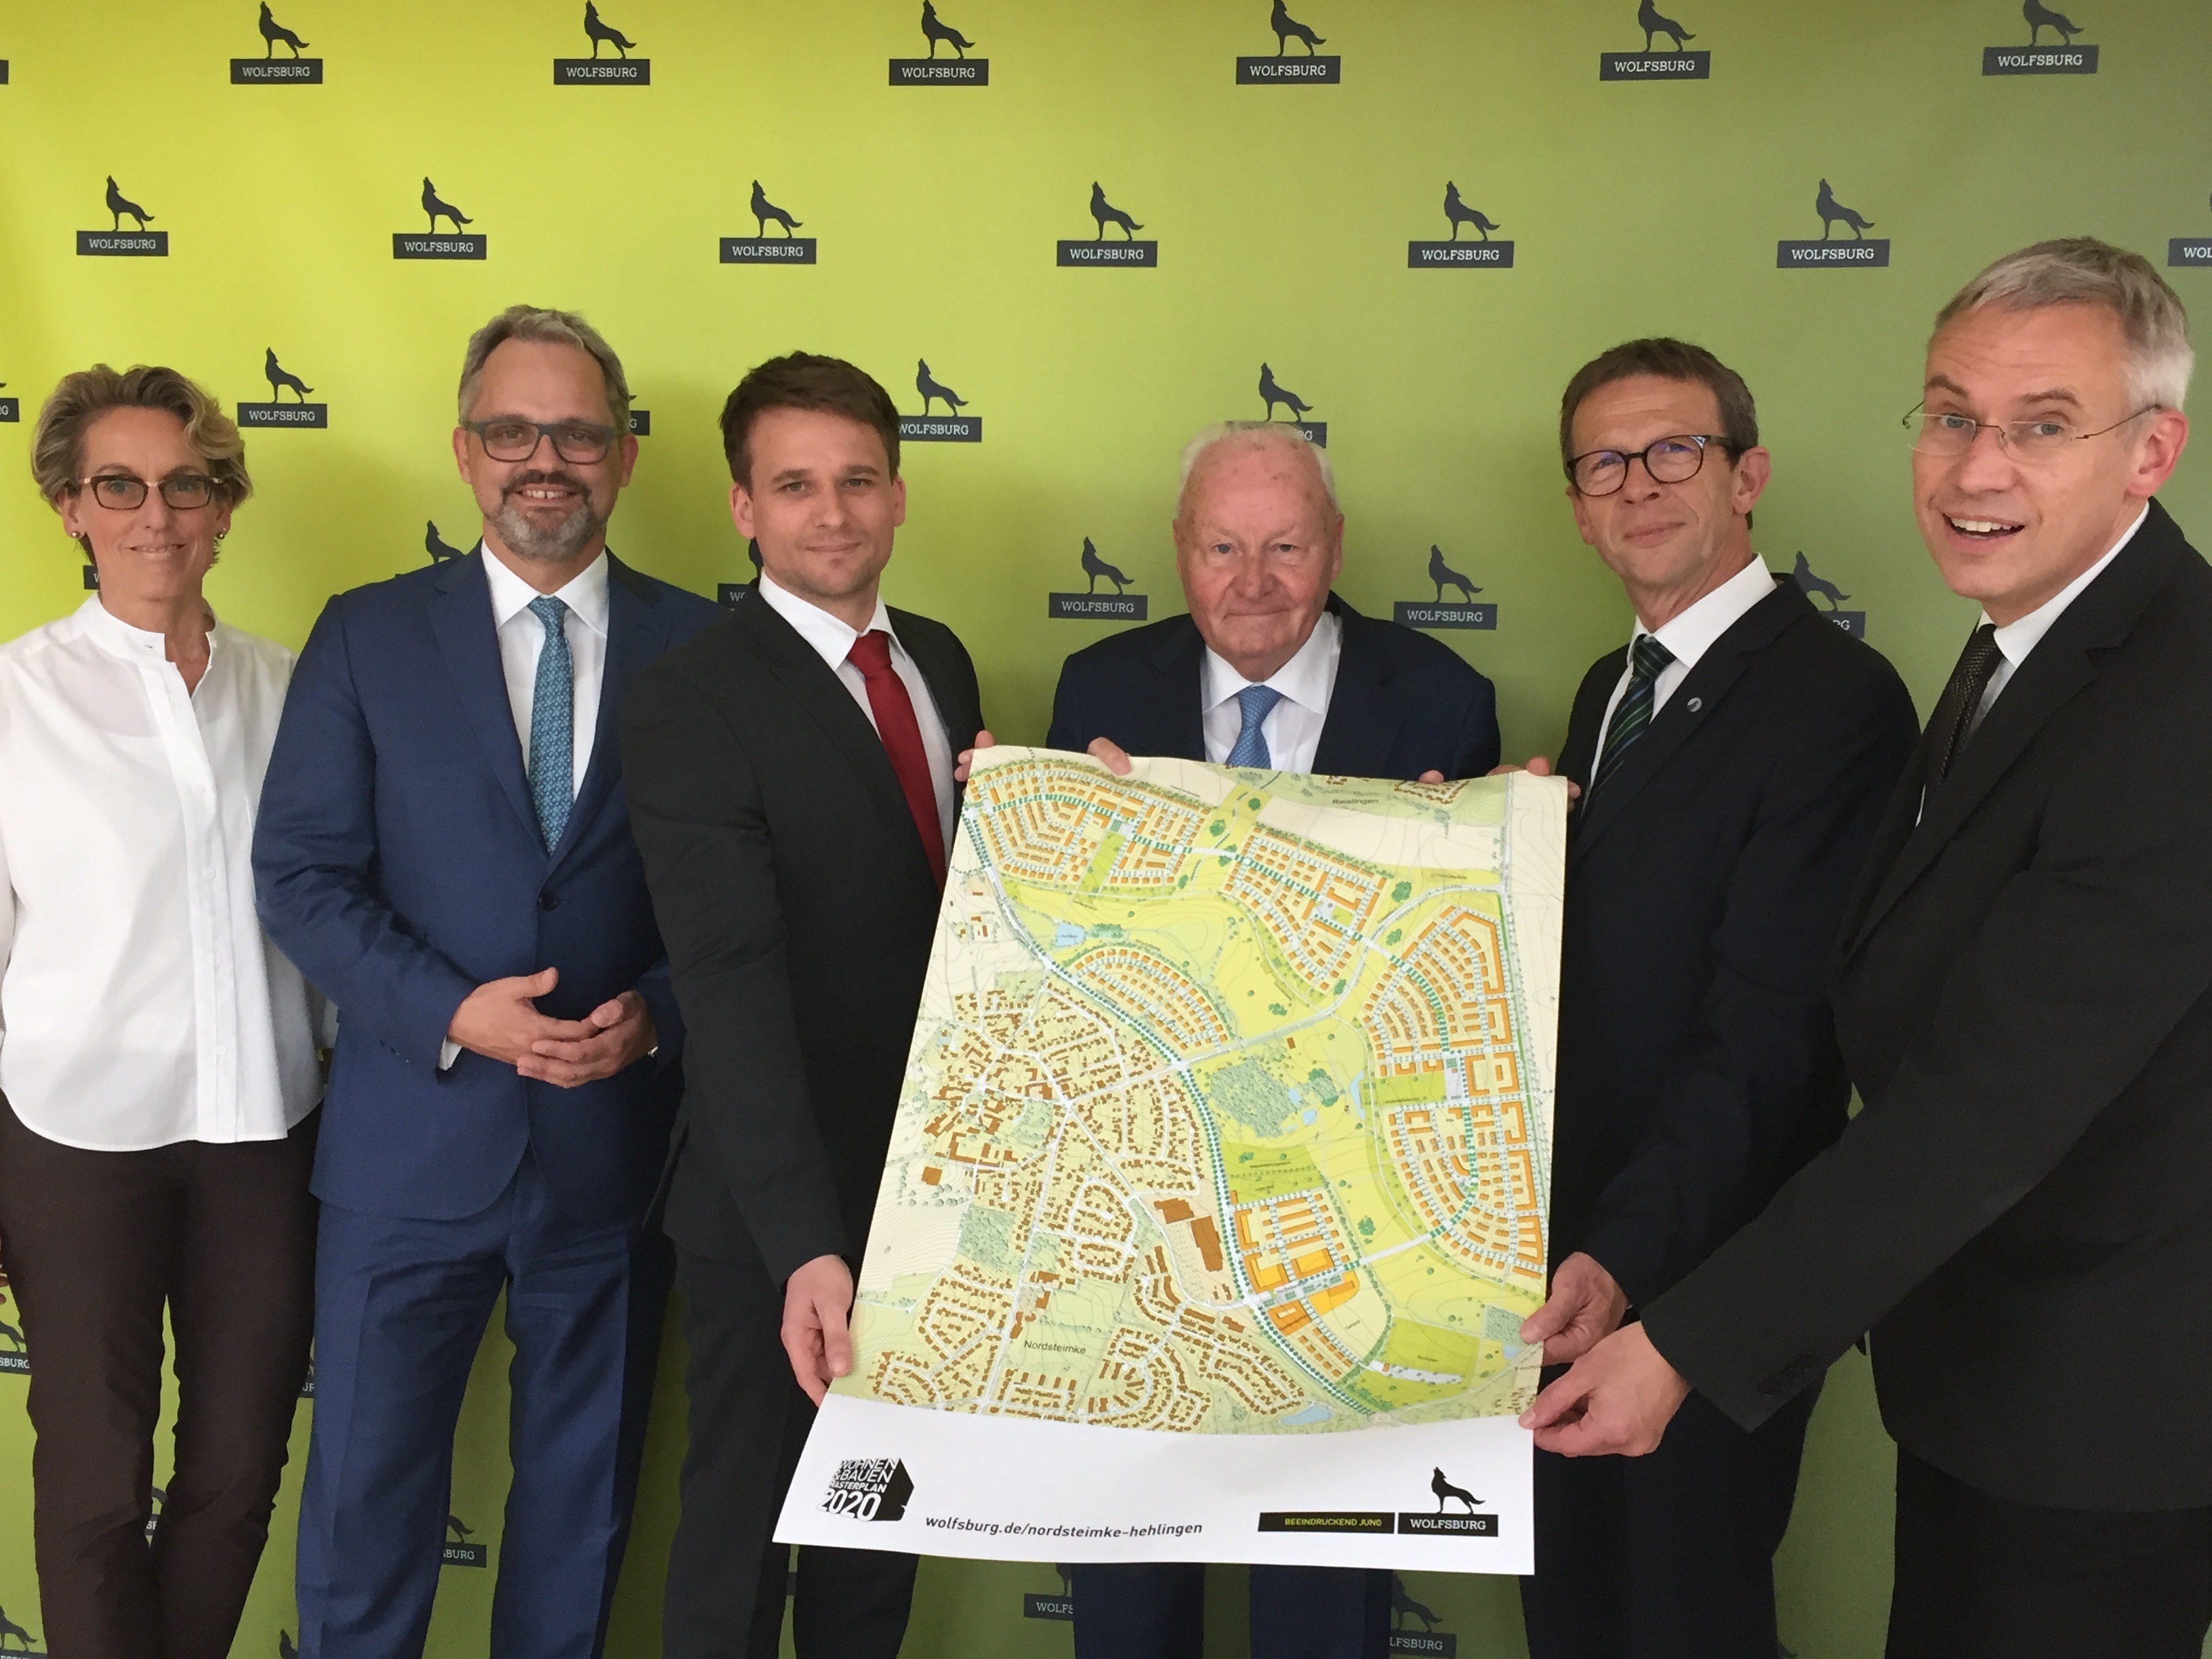 Vorstellung der Planungen zum zukünftigen Baugebiet Nordsteimke-Hehlingen